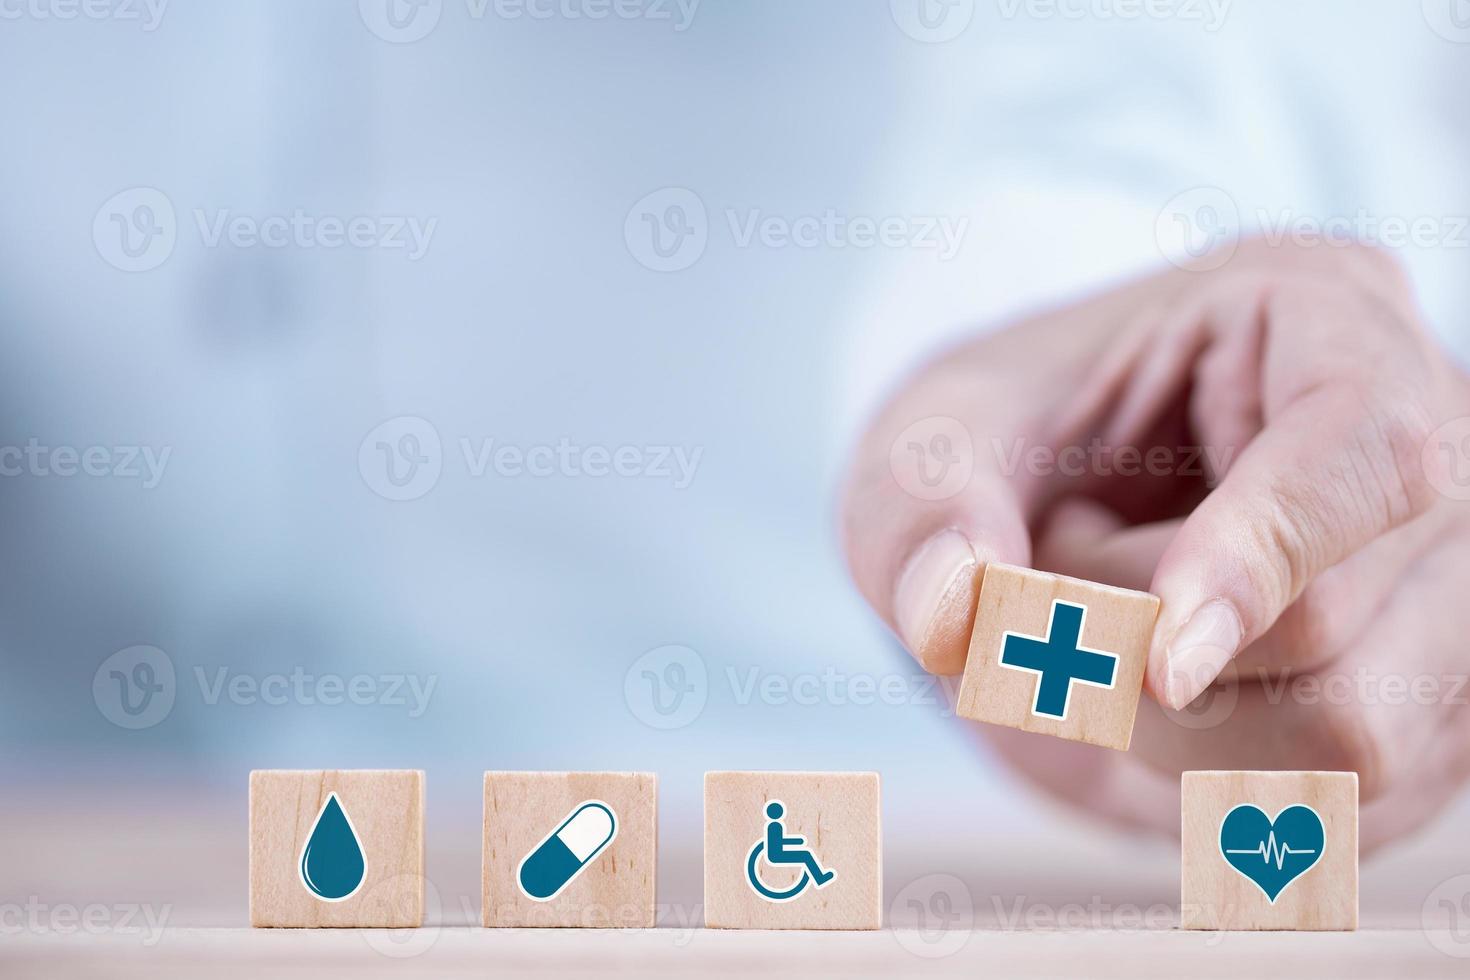 geschäftsmann wählt ein emoticon-ikonen-gesundheitswesen-medizinisches symbol auf holzblock-, gesundheits- und krankenversicherungskonzept foto